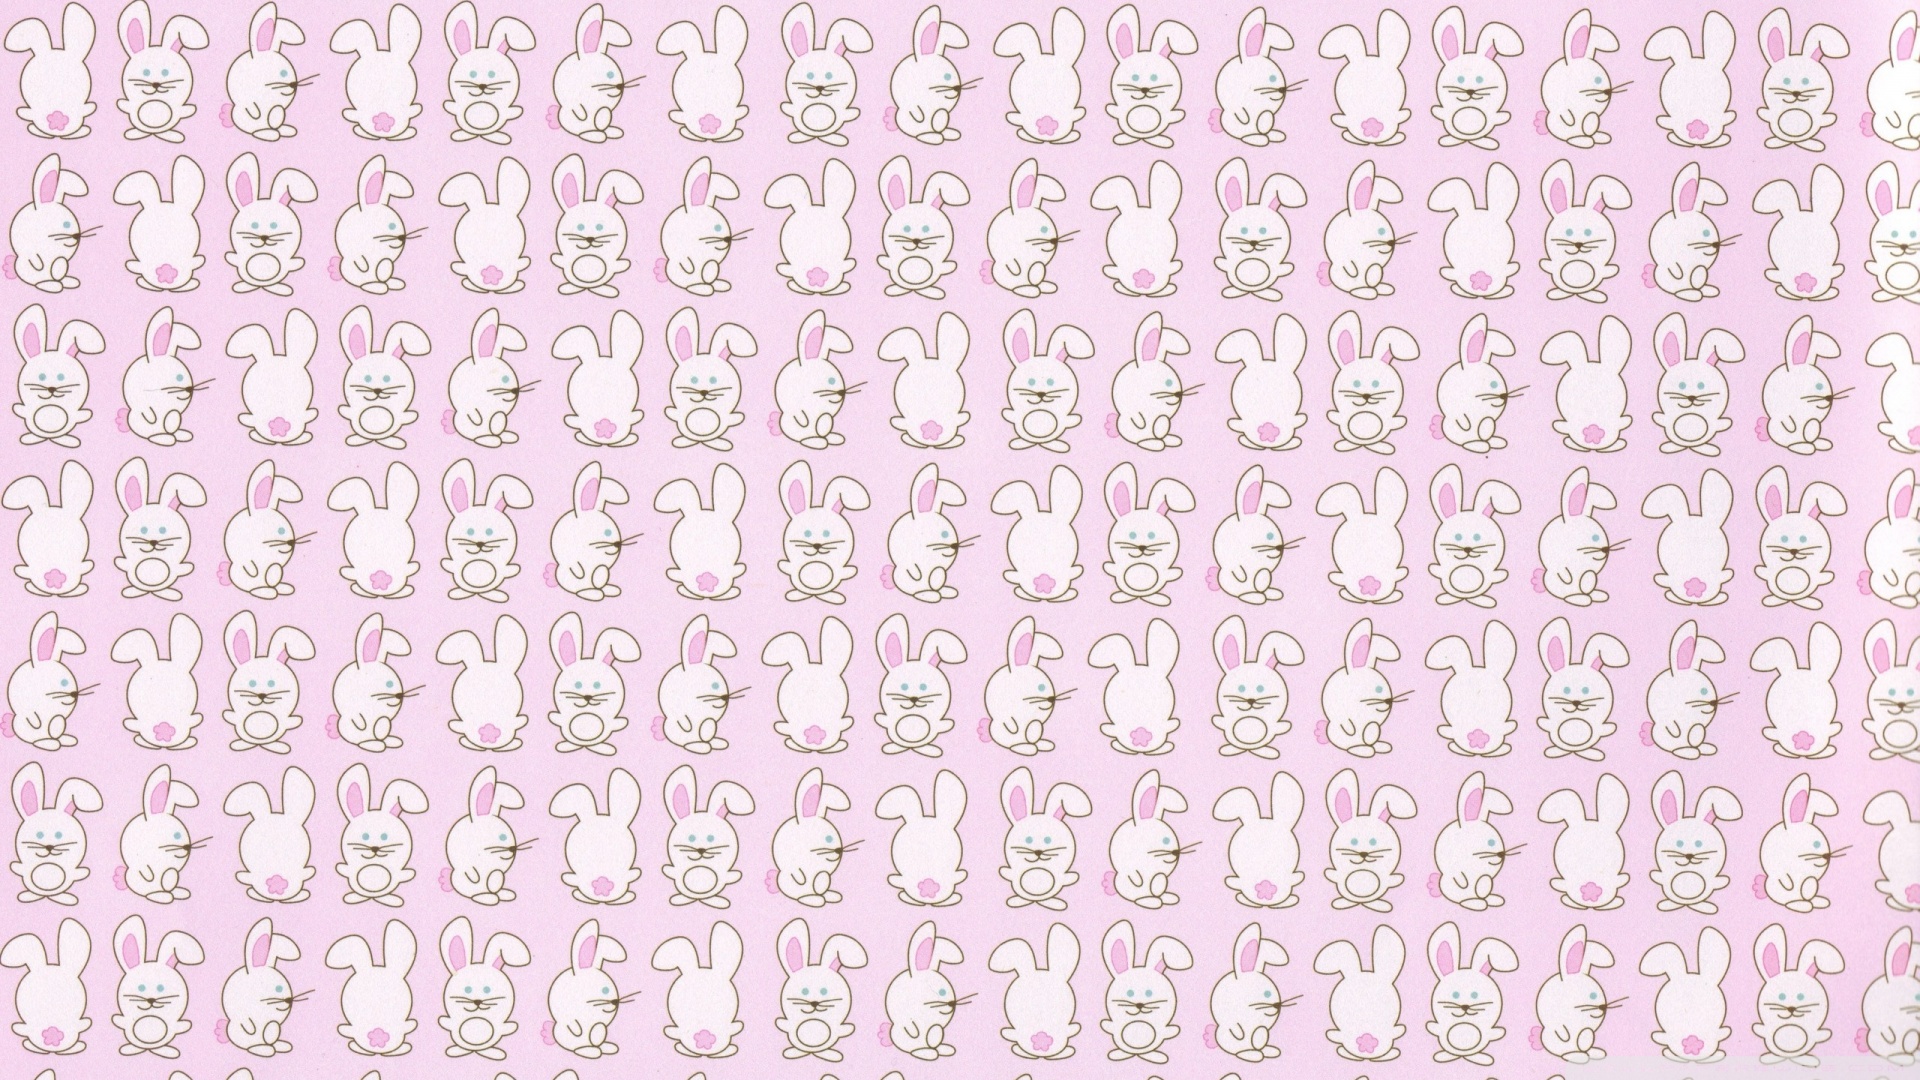 Cute wallpaper patterns